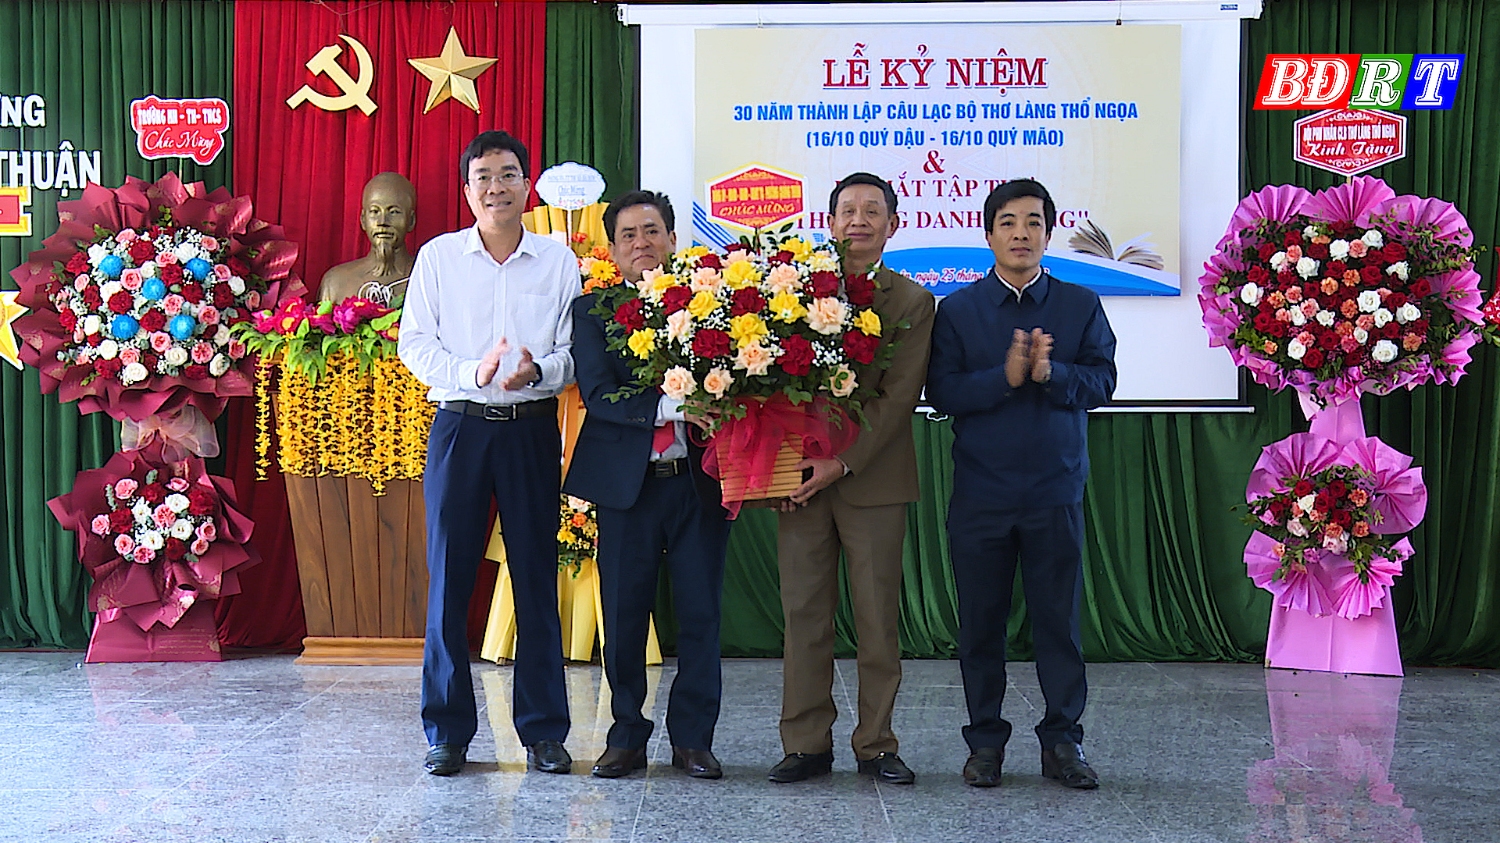 Đại diện lãnh đạo phường tặng hoa chúc mừng Câu lạc bộ thơ làng Thổ Ngọa